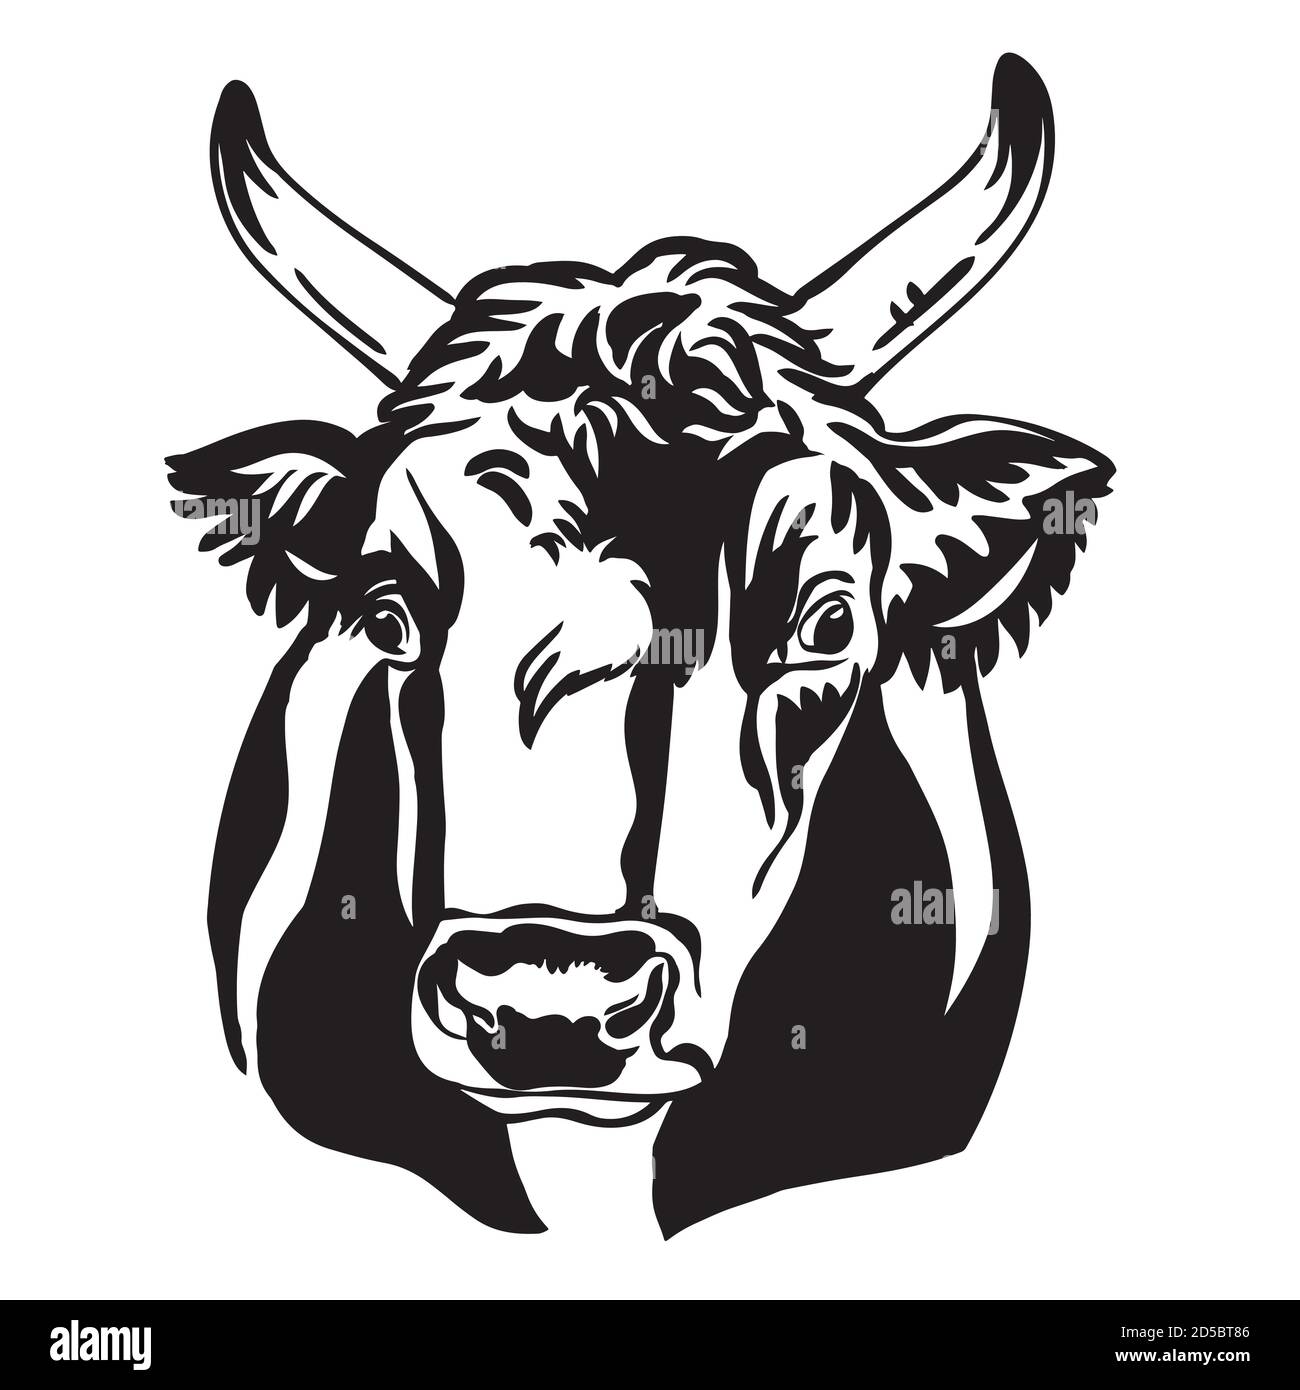 Portrait décoratif de l'illustration vectorielle de portrait de taureau de couleur noire isolée sur fond blanc. Image de modèle de gravure pour l'étiquette, le logo, la conception Illustration de Vecteur